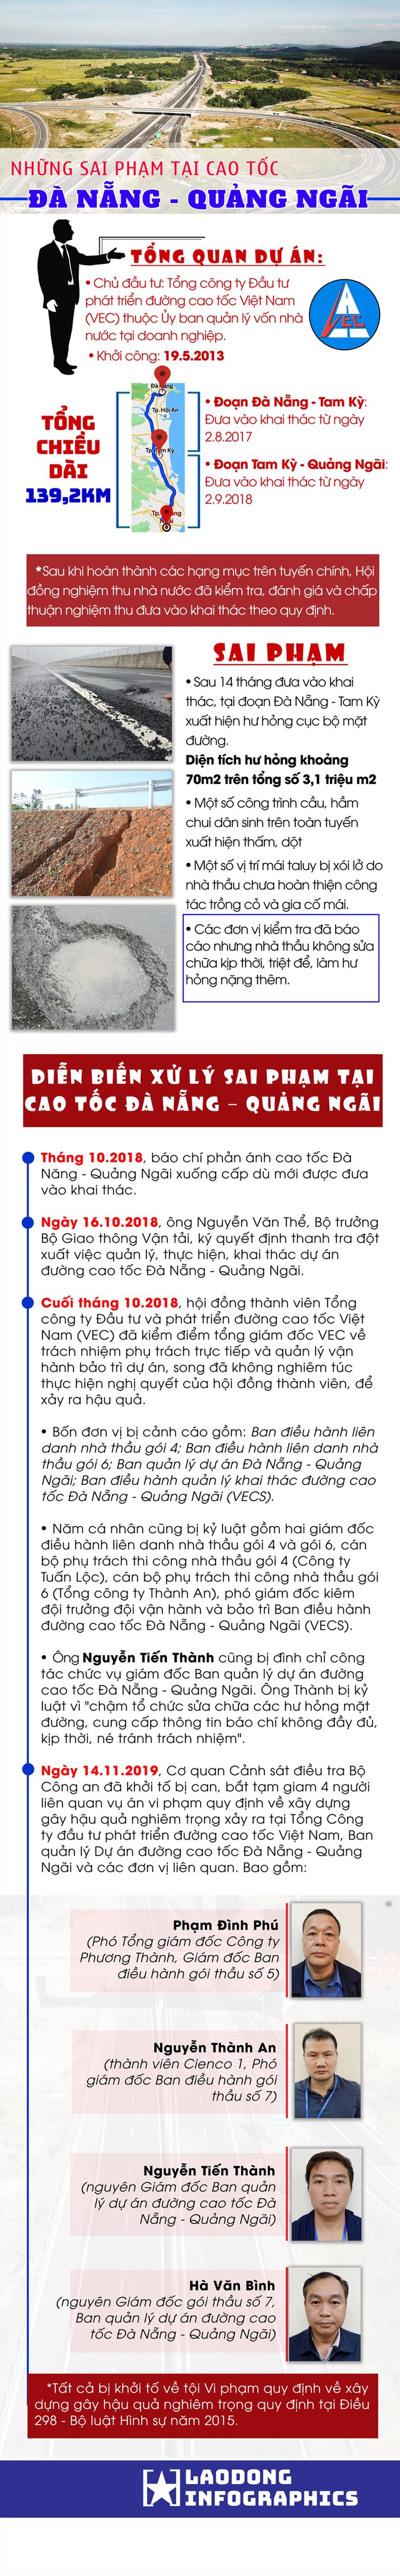 Infographic: Những sai phạm tại cao tốc Đà Nẵng - Quảng Ngãi - Ảnh 1.